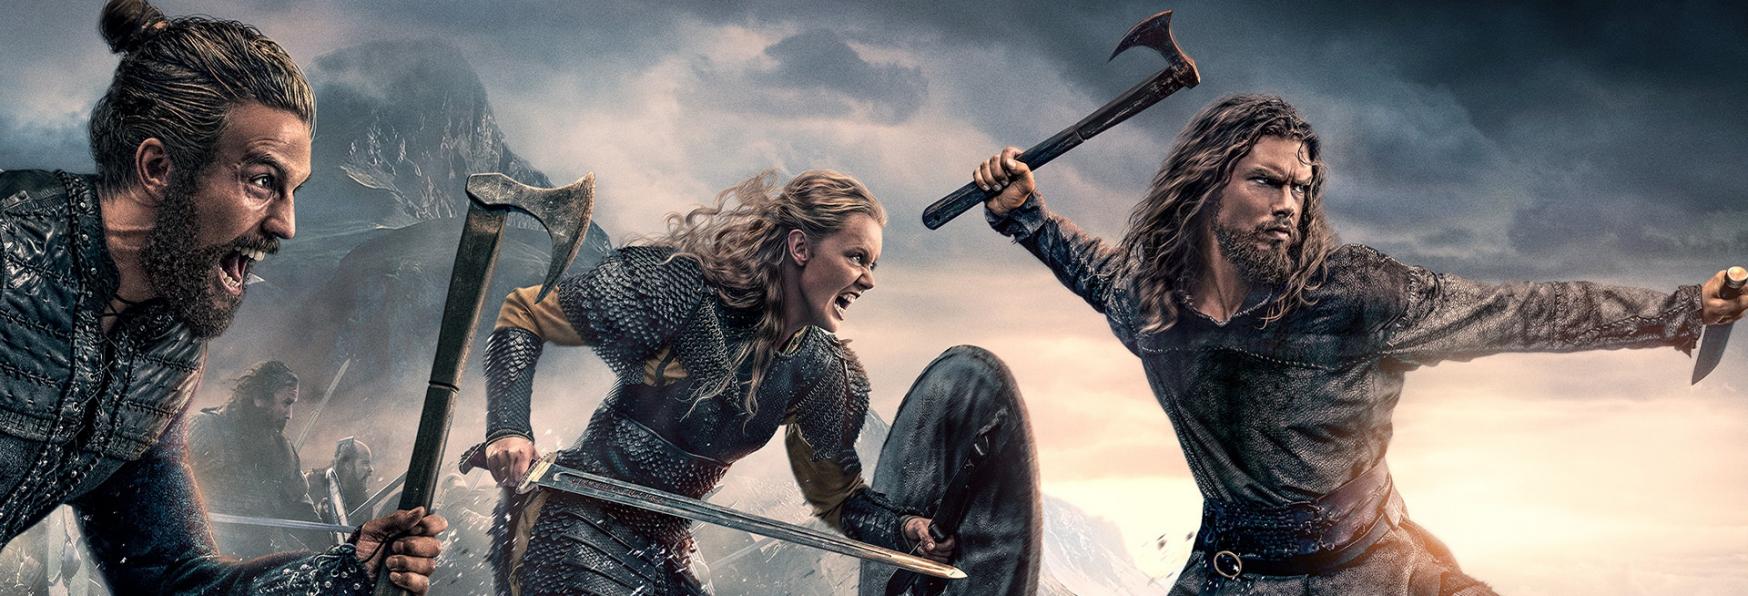 Vikings: Valhalla 2 - pubblicato il primo Teaser Trailer della nuova Stagione